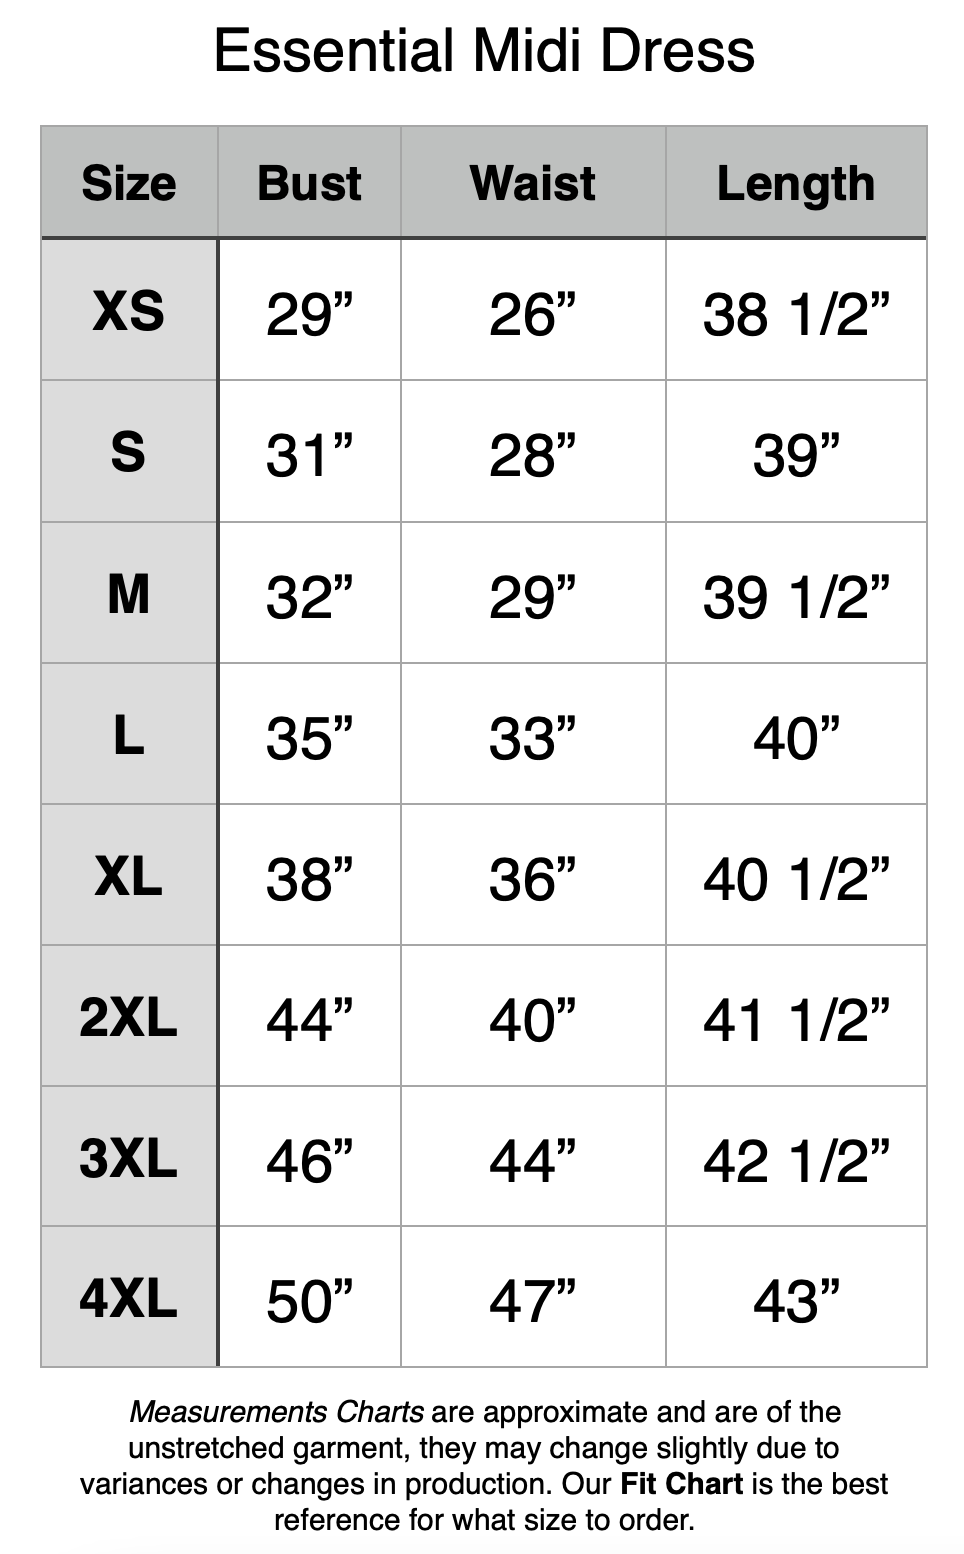 Essential Knee Length Dress - XS: 29" Bust, 26" Waist, 38.5" Length. S: 31" Bust, 28" Waist, 39" Length. M: 32" Bust, 29" Waist, 39.5" Length. L: 35" Bust, 33" Waist, 40" Length. XL: 38" Bust, 36" Waist, 40.5" Length. 2XL: 44" Bust, 40" Waist, 41.5" Length. 3XL: 46" Bust, 44" Waist, 42.5" Length. 4XL: 50" Bust, 47" Waist, 43" Length.